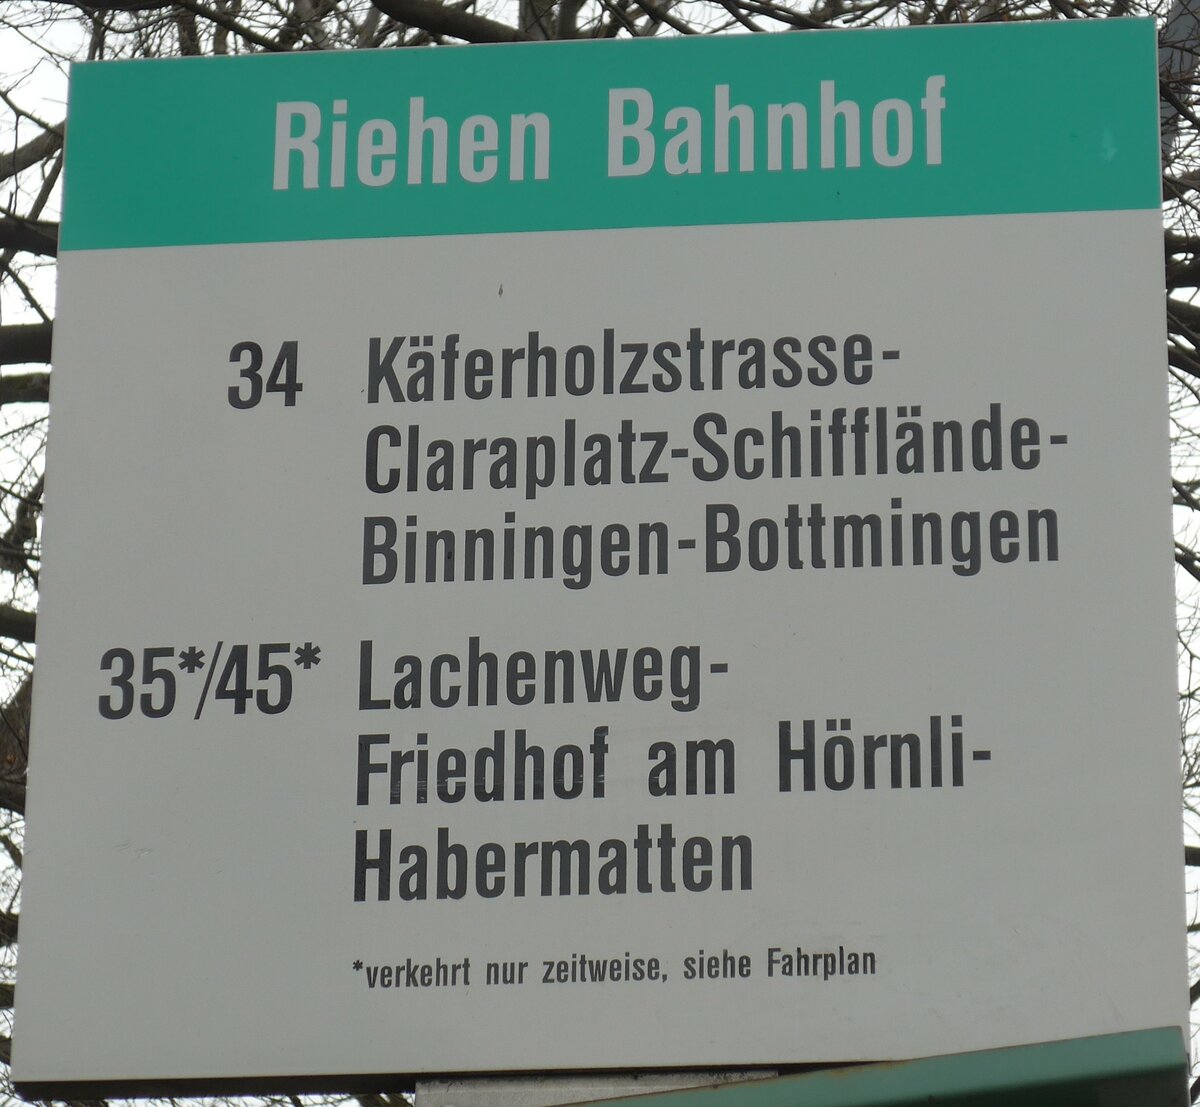 (159'688) - BVB-Haltestellenschild - Riehen, Bahnhof - am 11. April 2015